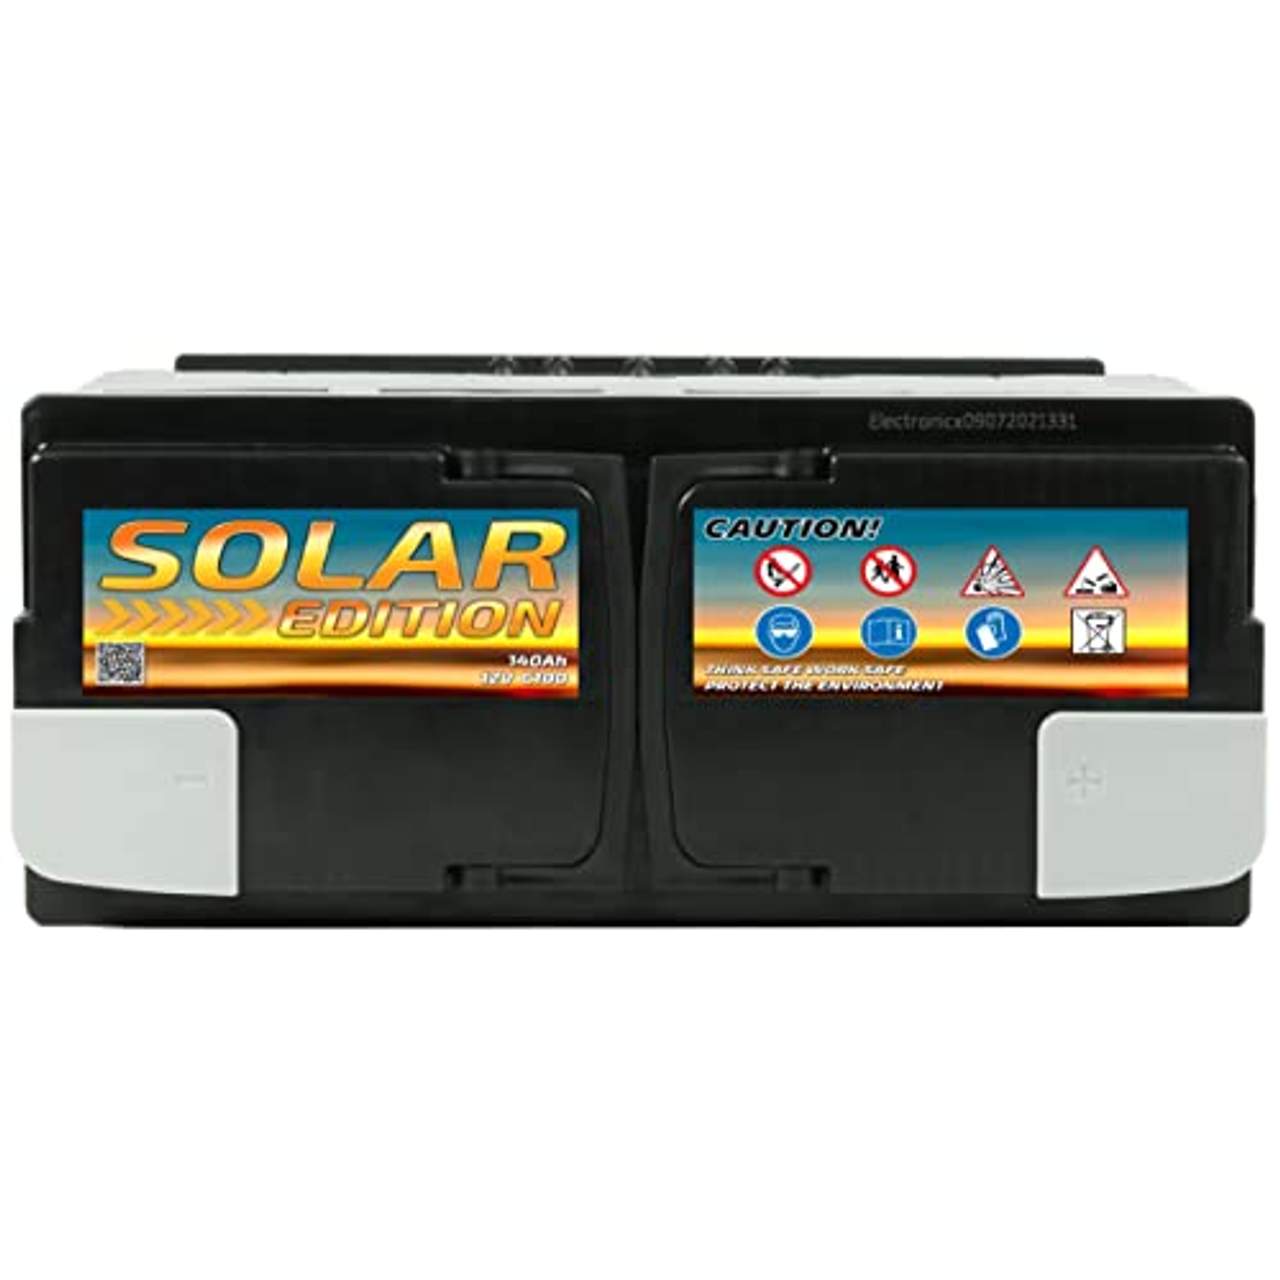 Solarbatterie 12v 140Ah Gel Batterie Electronicx Solar Edition Solarbatterie 12v Akku 12v Solar Batterien